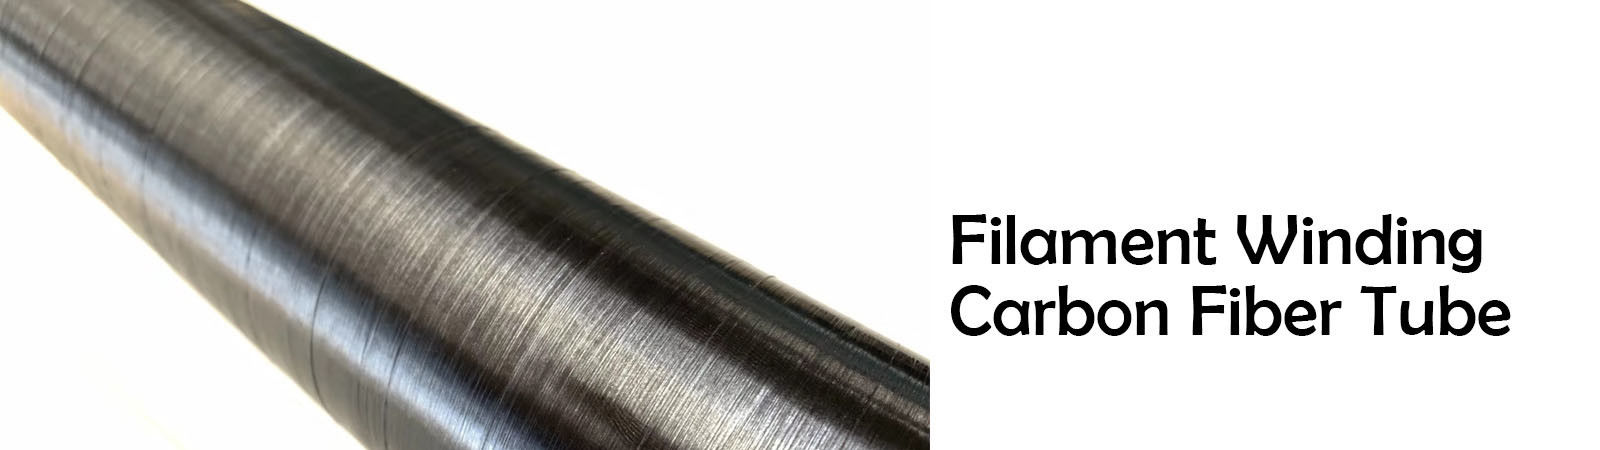 Tubo esbaforido da fibra do carbono do filamento